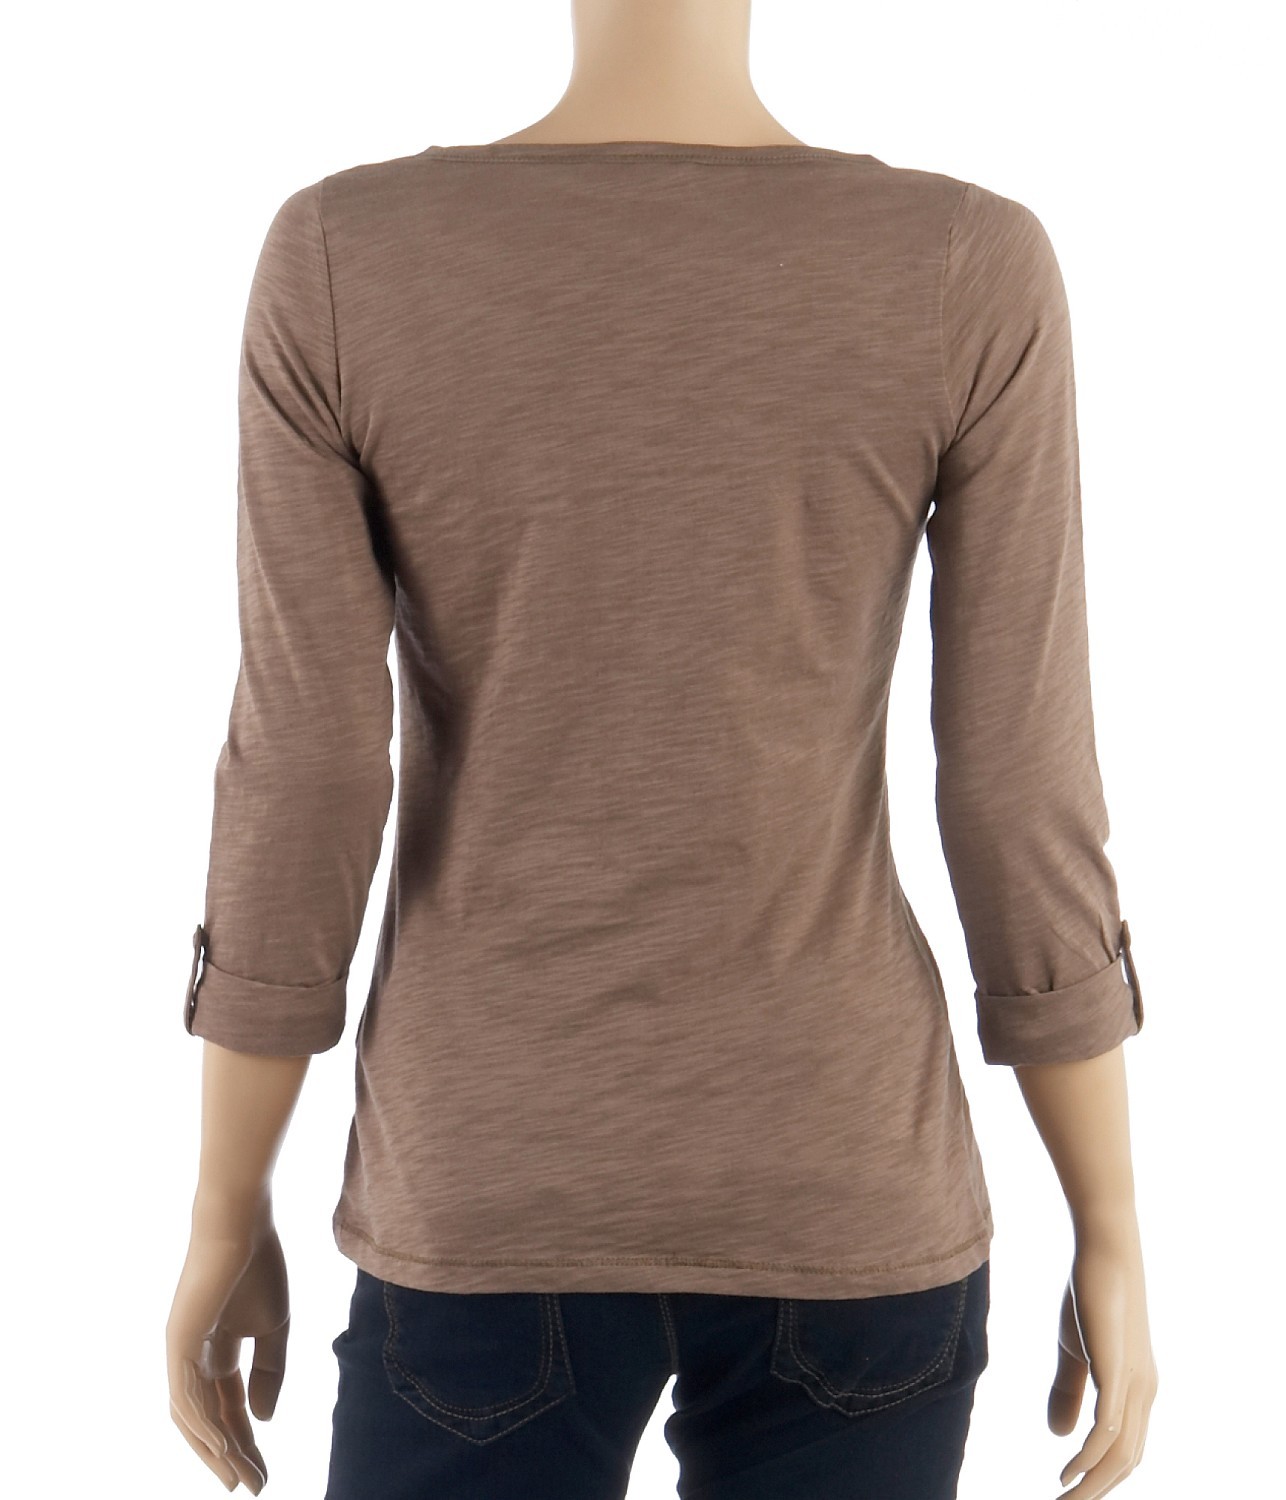 Camaieu barna felső márkás póló 2013 fotója